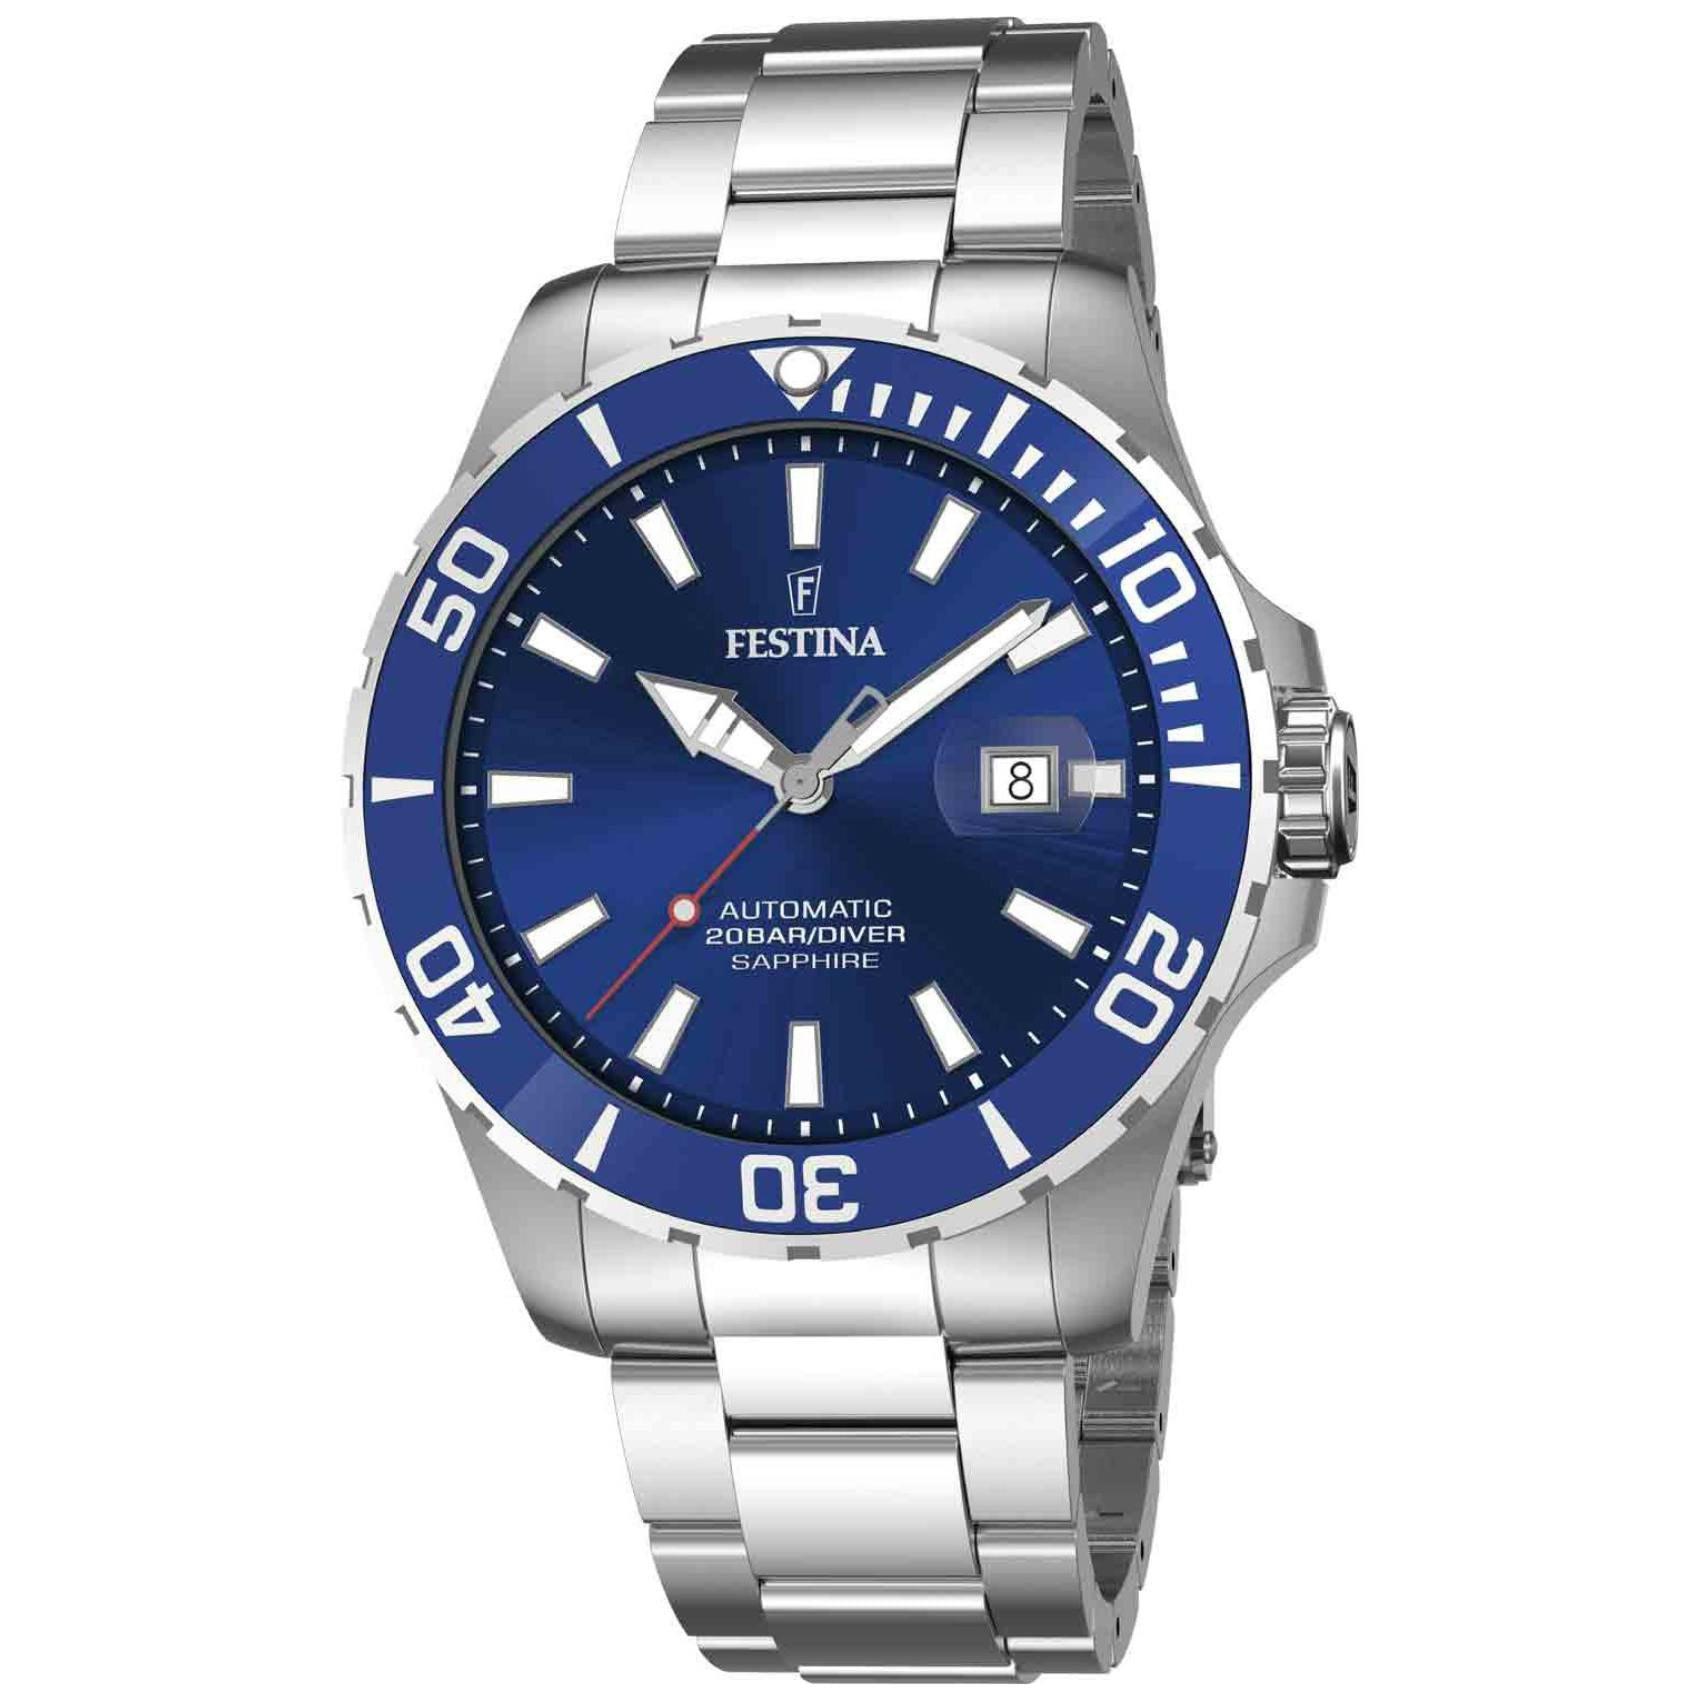 Καταδυτικό ρολόι Festina Diver F20531/3 με ασημί μπρασελέ, μπλε καντράν με ένδειξη ημερομηνίας αυτόματο μηχανισμό και στεφάνι διαμέτρου 44mm.